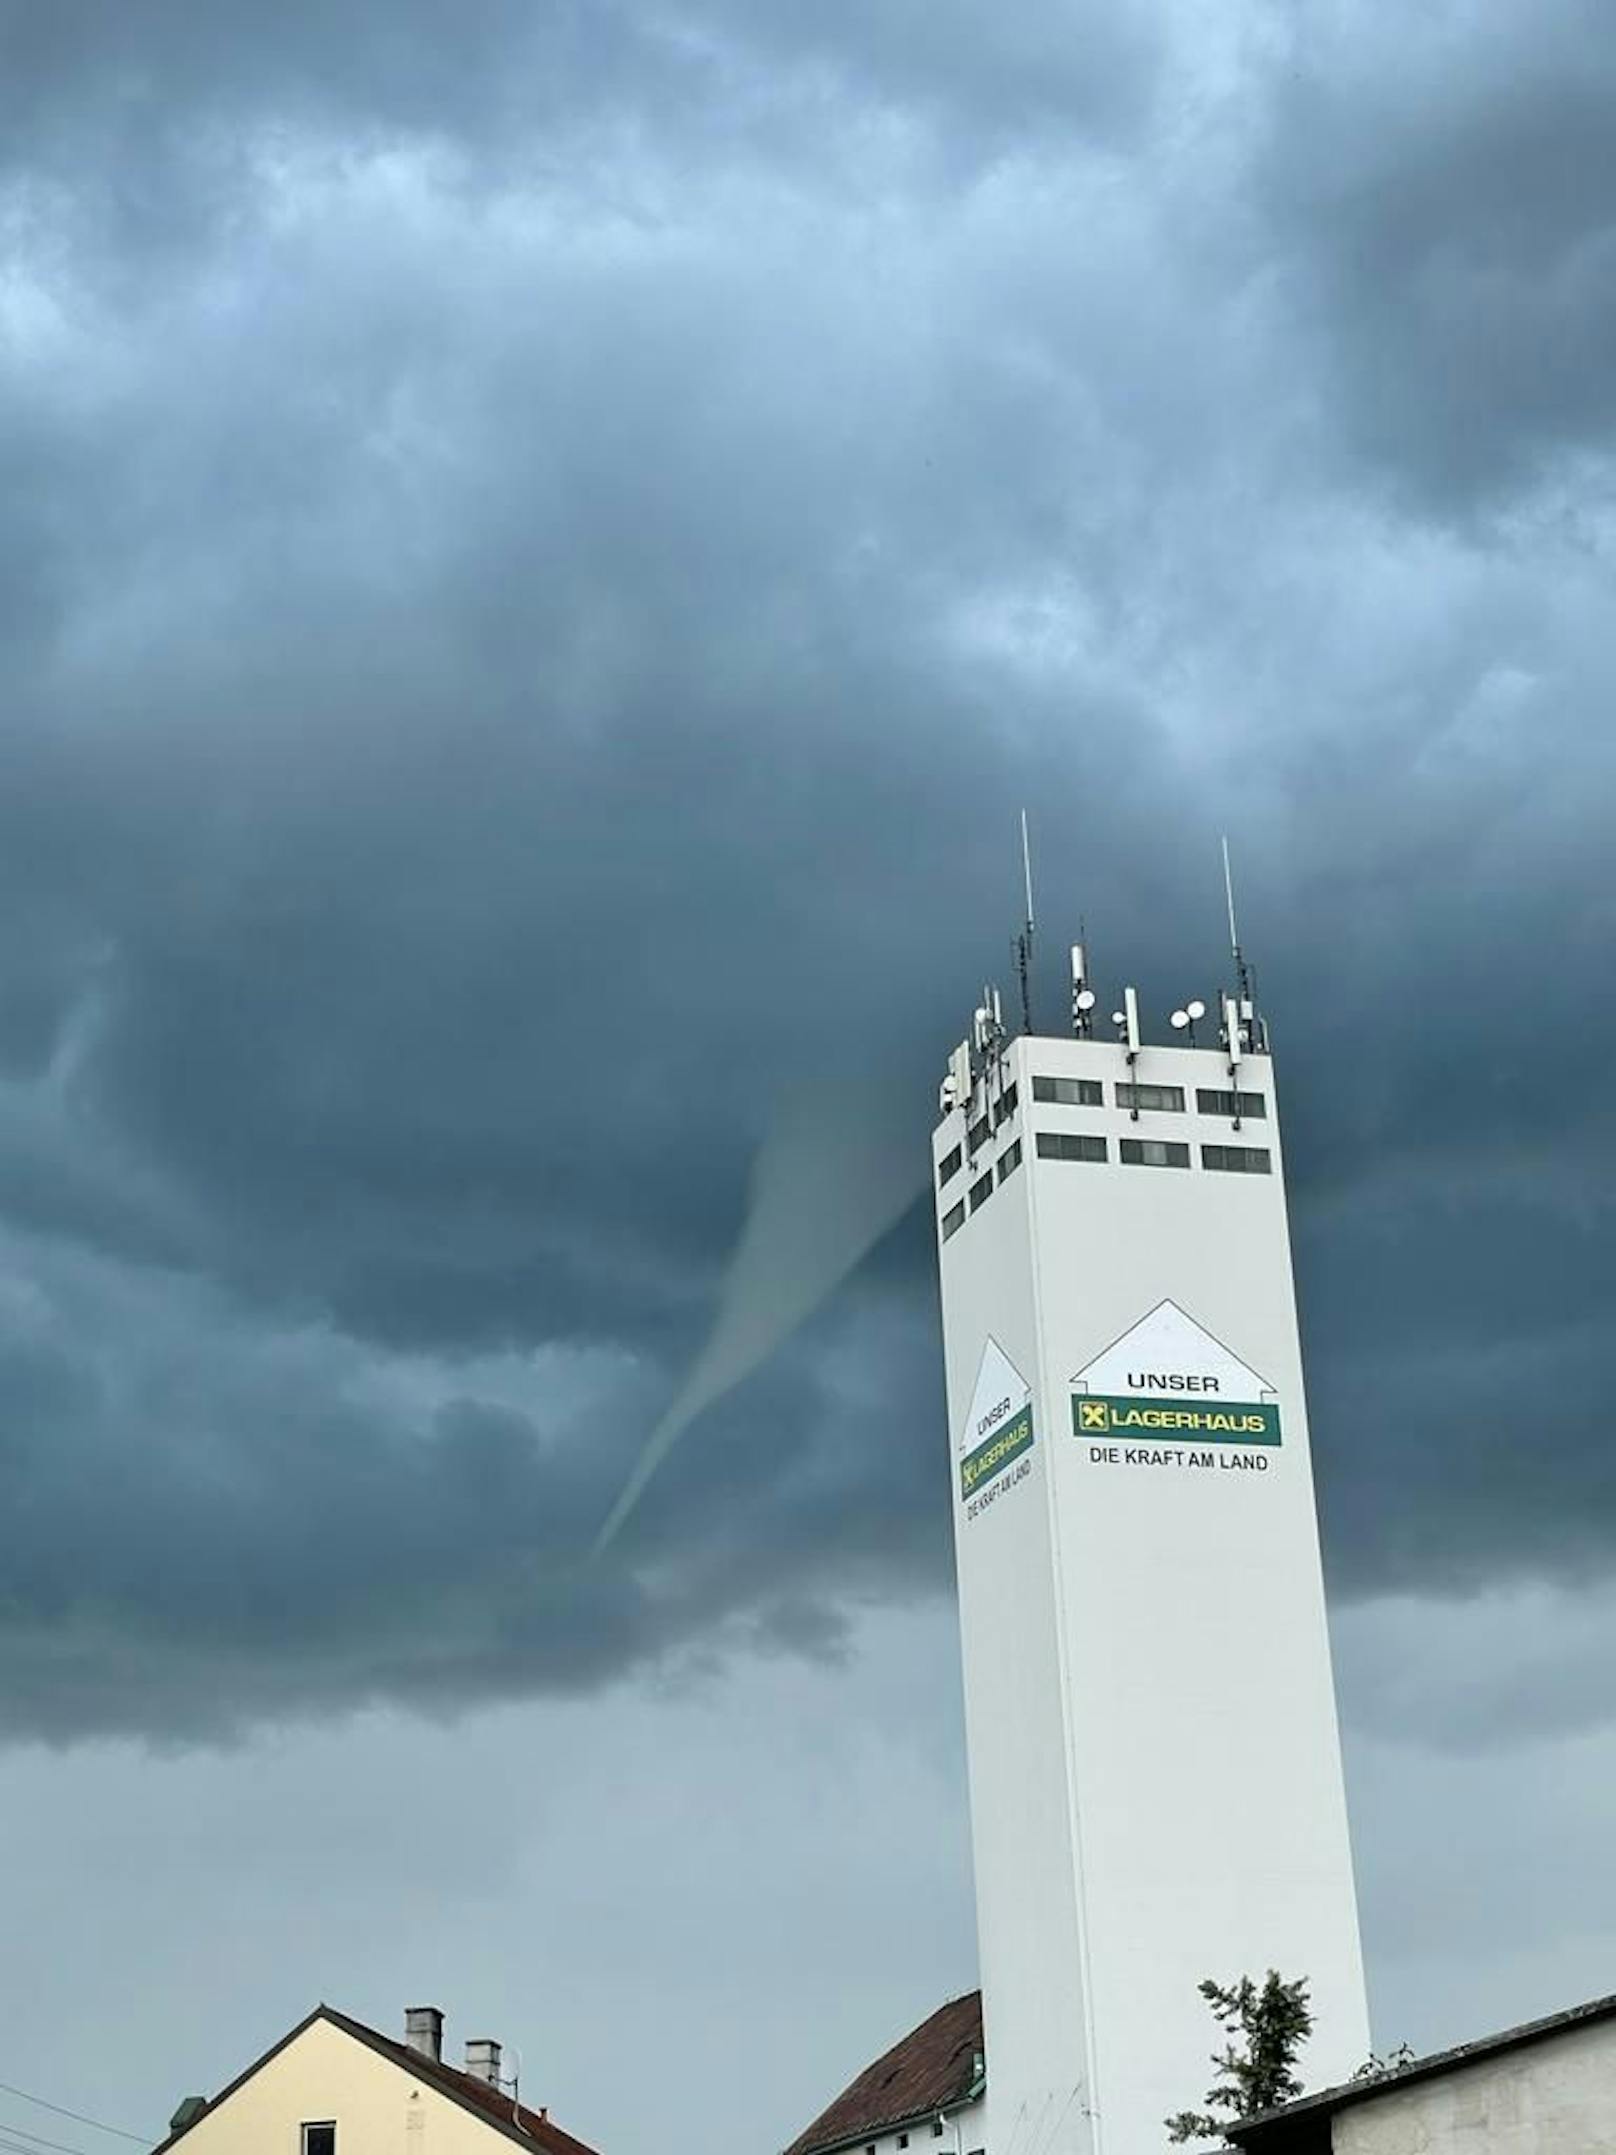 Wetter-Experte erklärt Tornado-Phänomen in NÖ